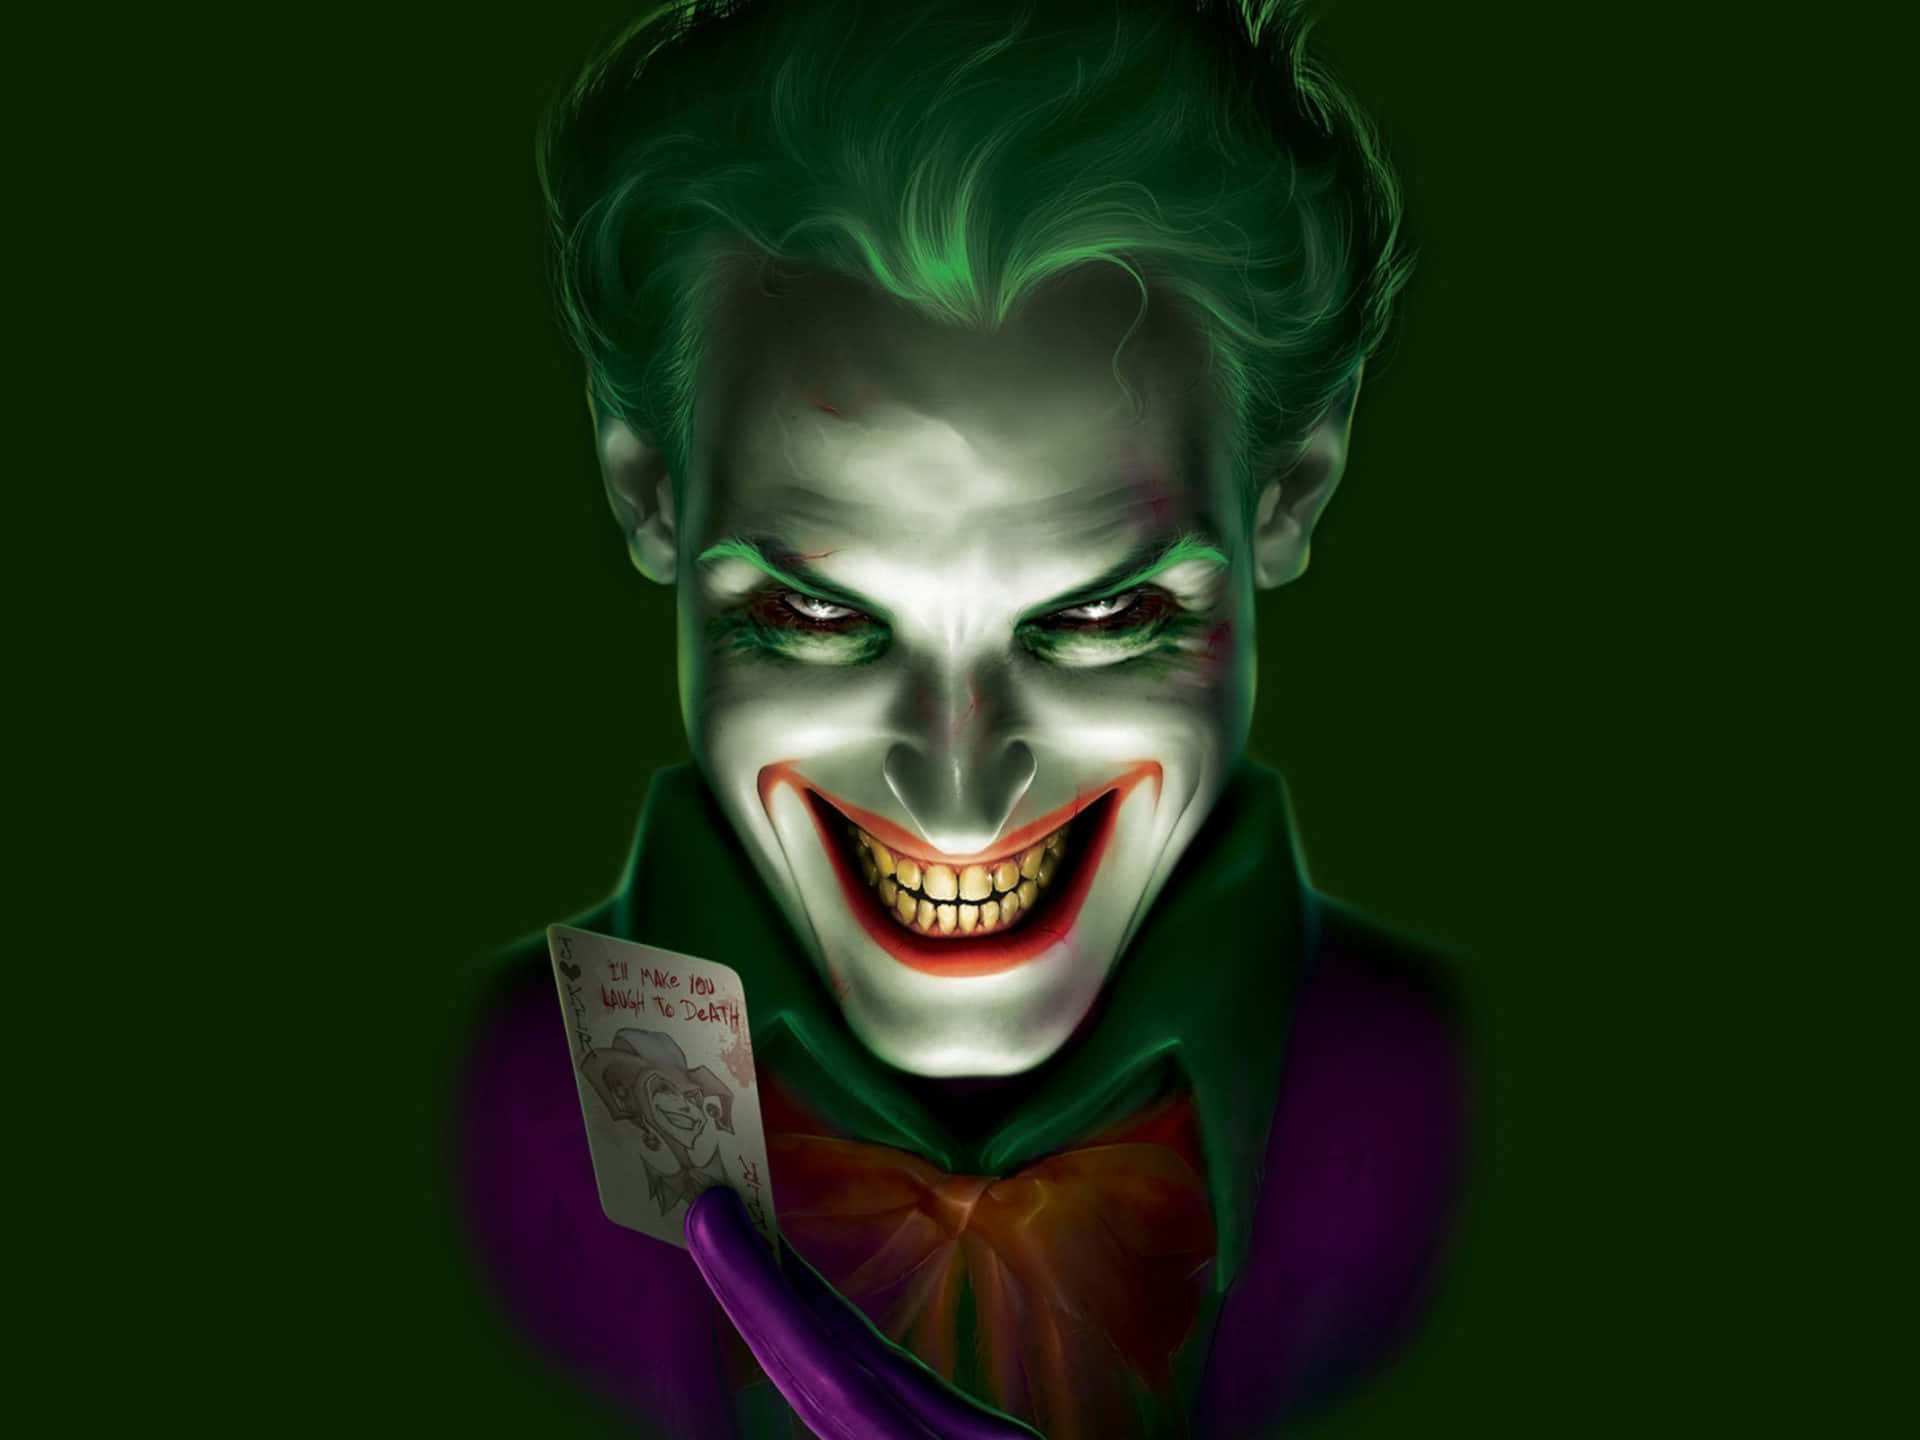 Görmig Inte Att Skratta - The Joker-serietidning Wallpaper